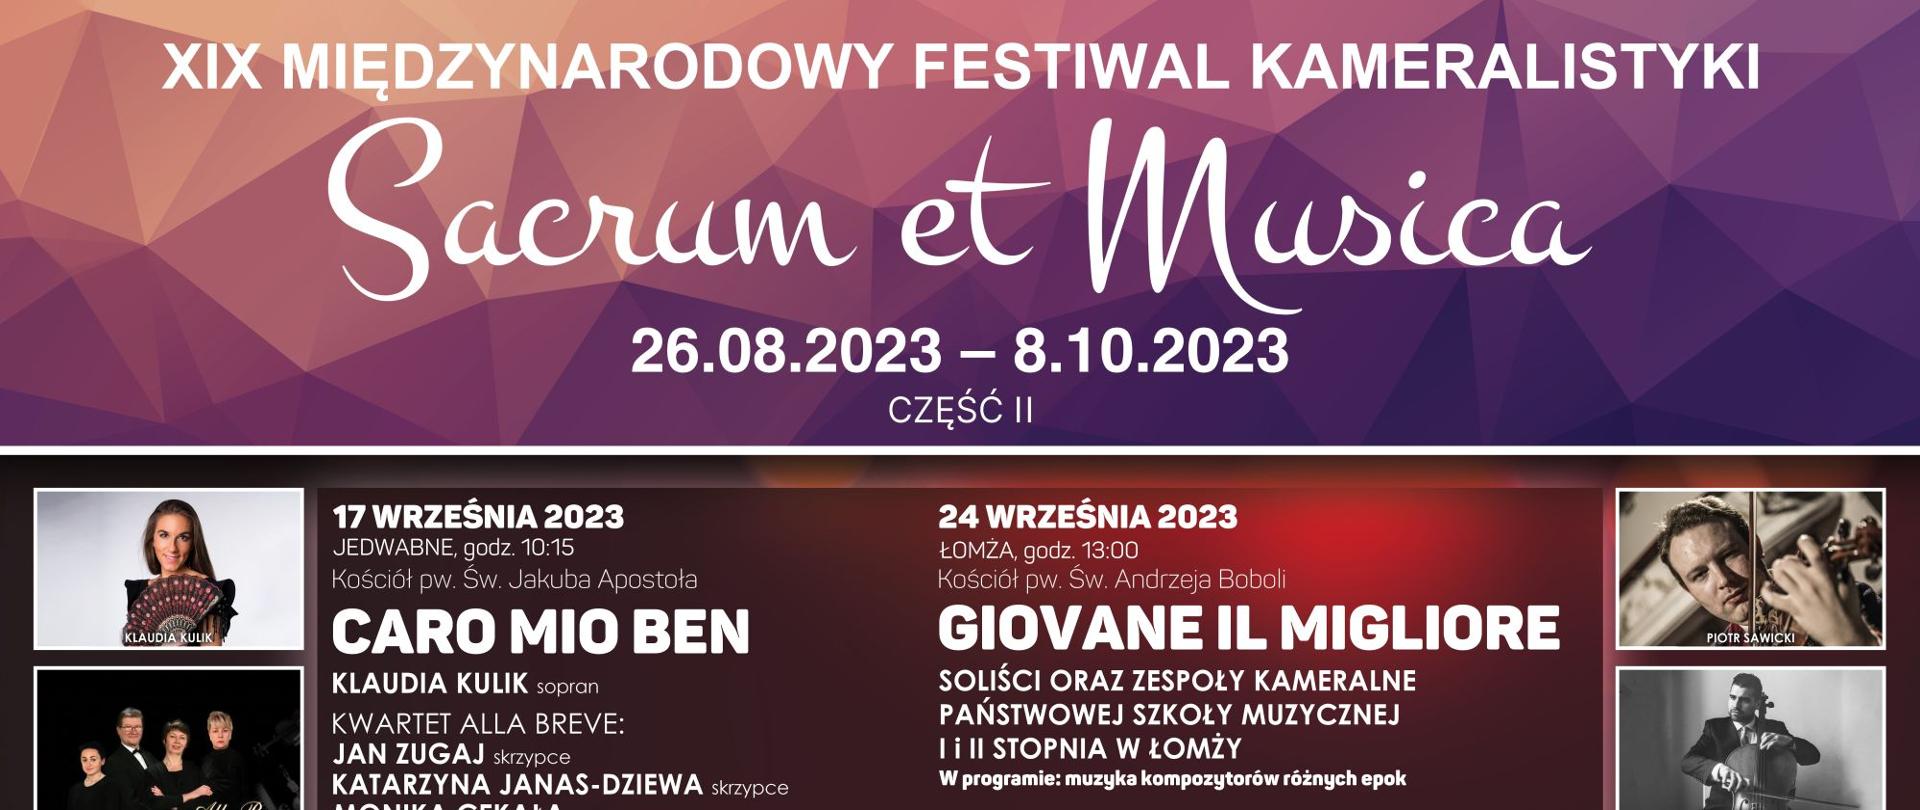 na afiszu z logotypami znajdują się wszyscy wykonawcy XIX Międzynarodowego Festiwalu Kameralistyki Sacrum et Musica 2023